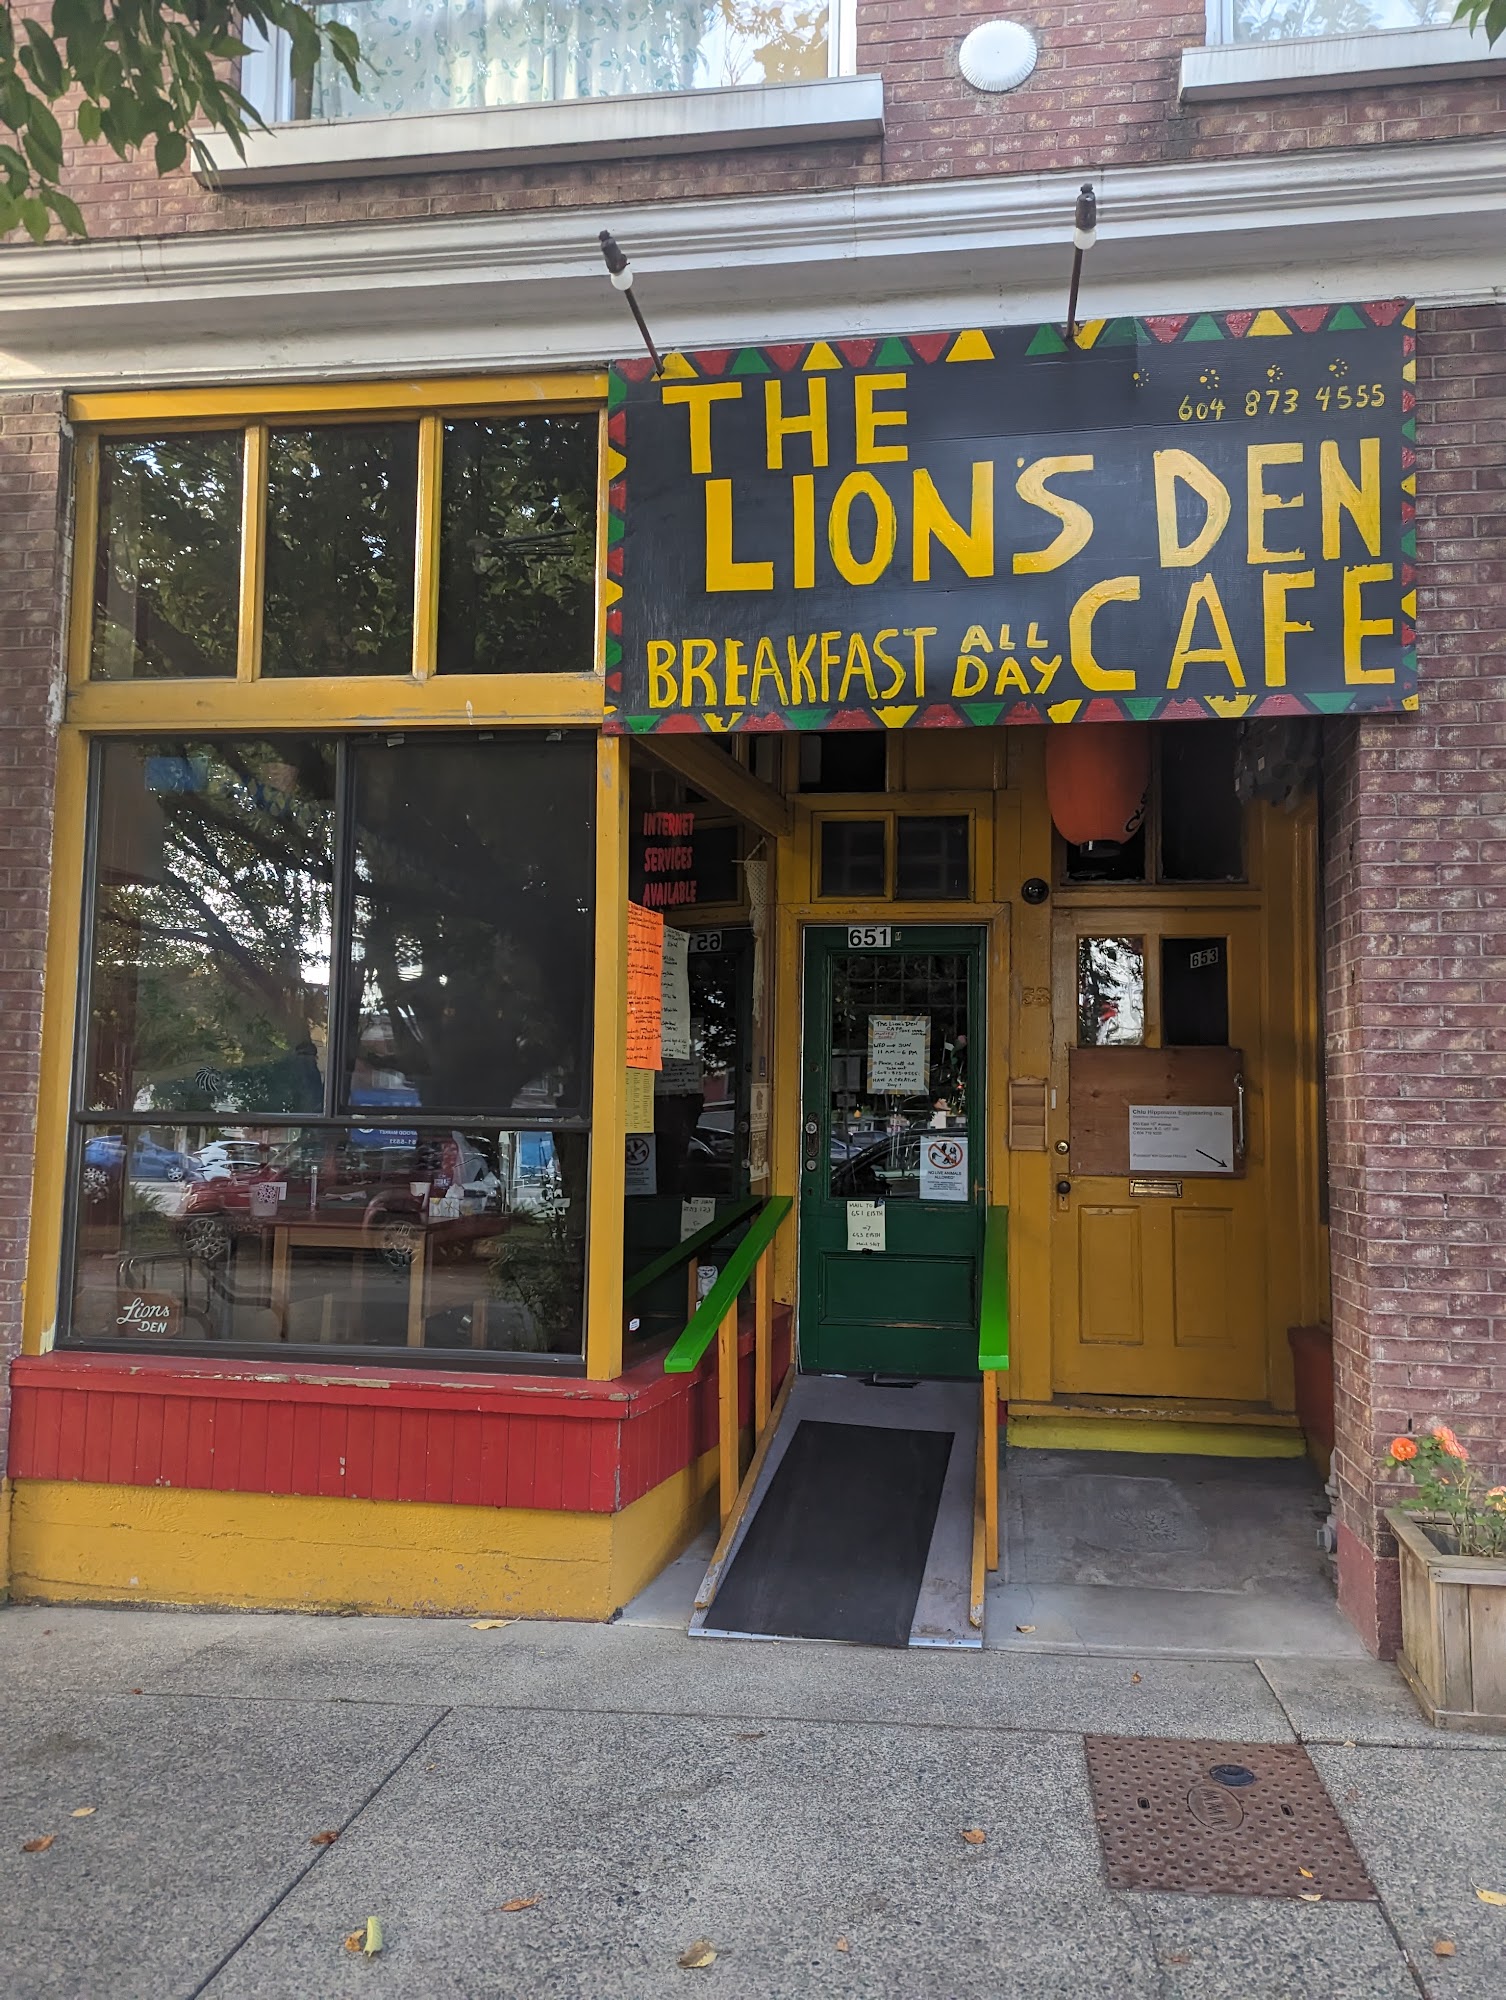 The Lion's Den Cafe